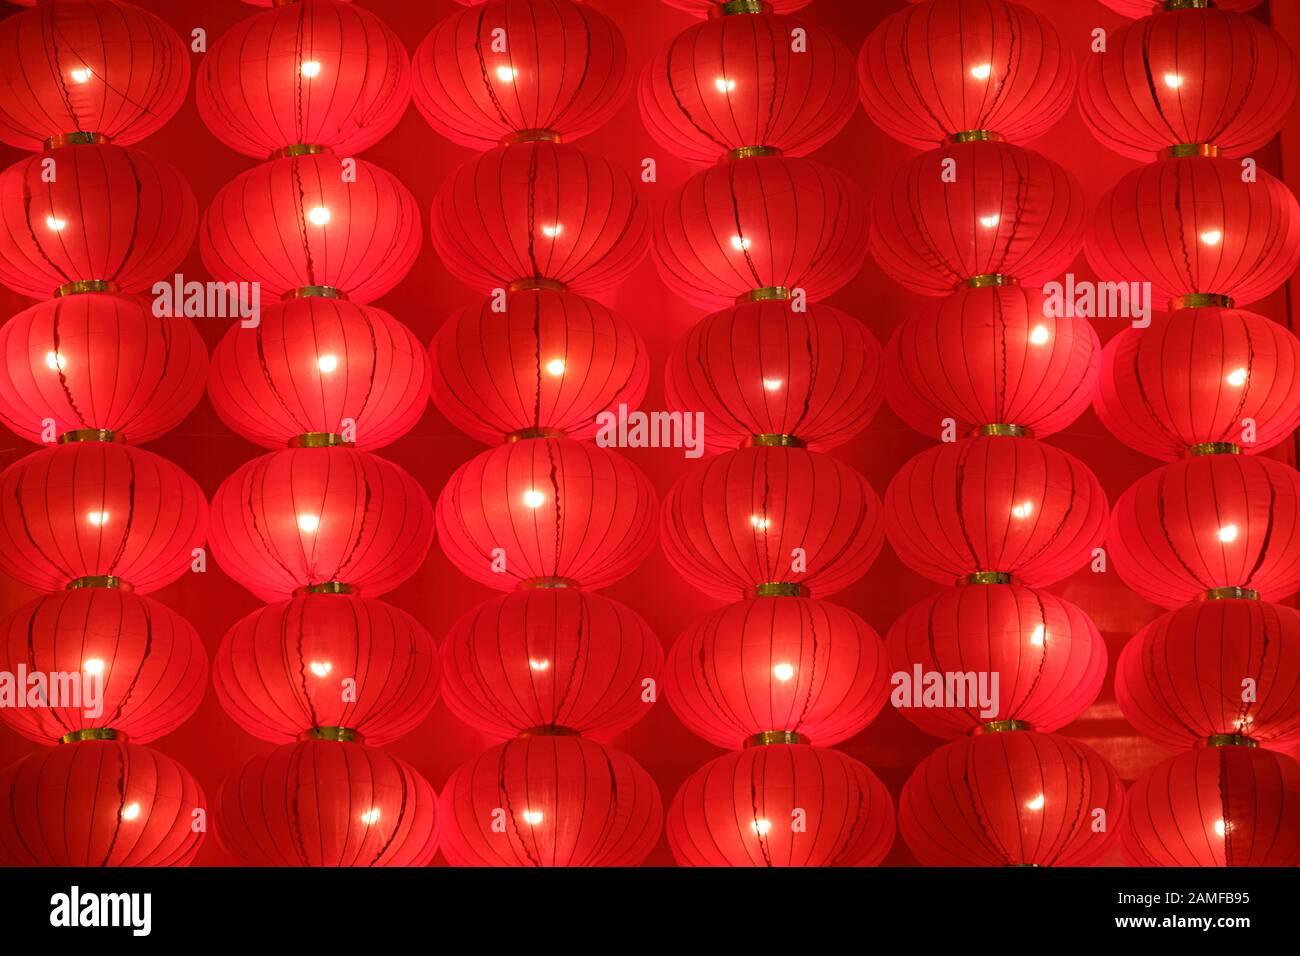 Hintergrund der chinesischen roten Laternen an der Wand hängende lunare Neujahrsdekorationen. Stockfoto